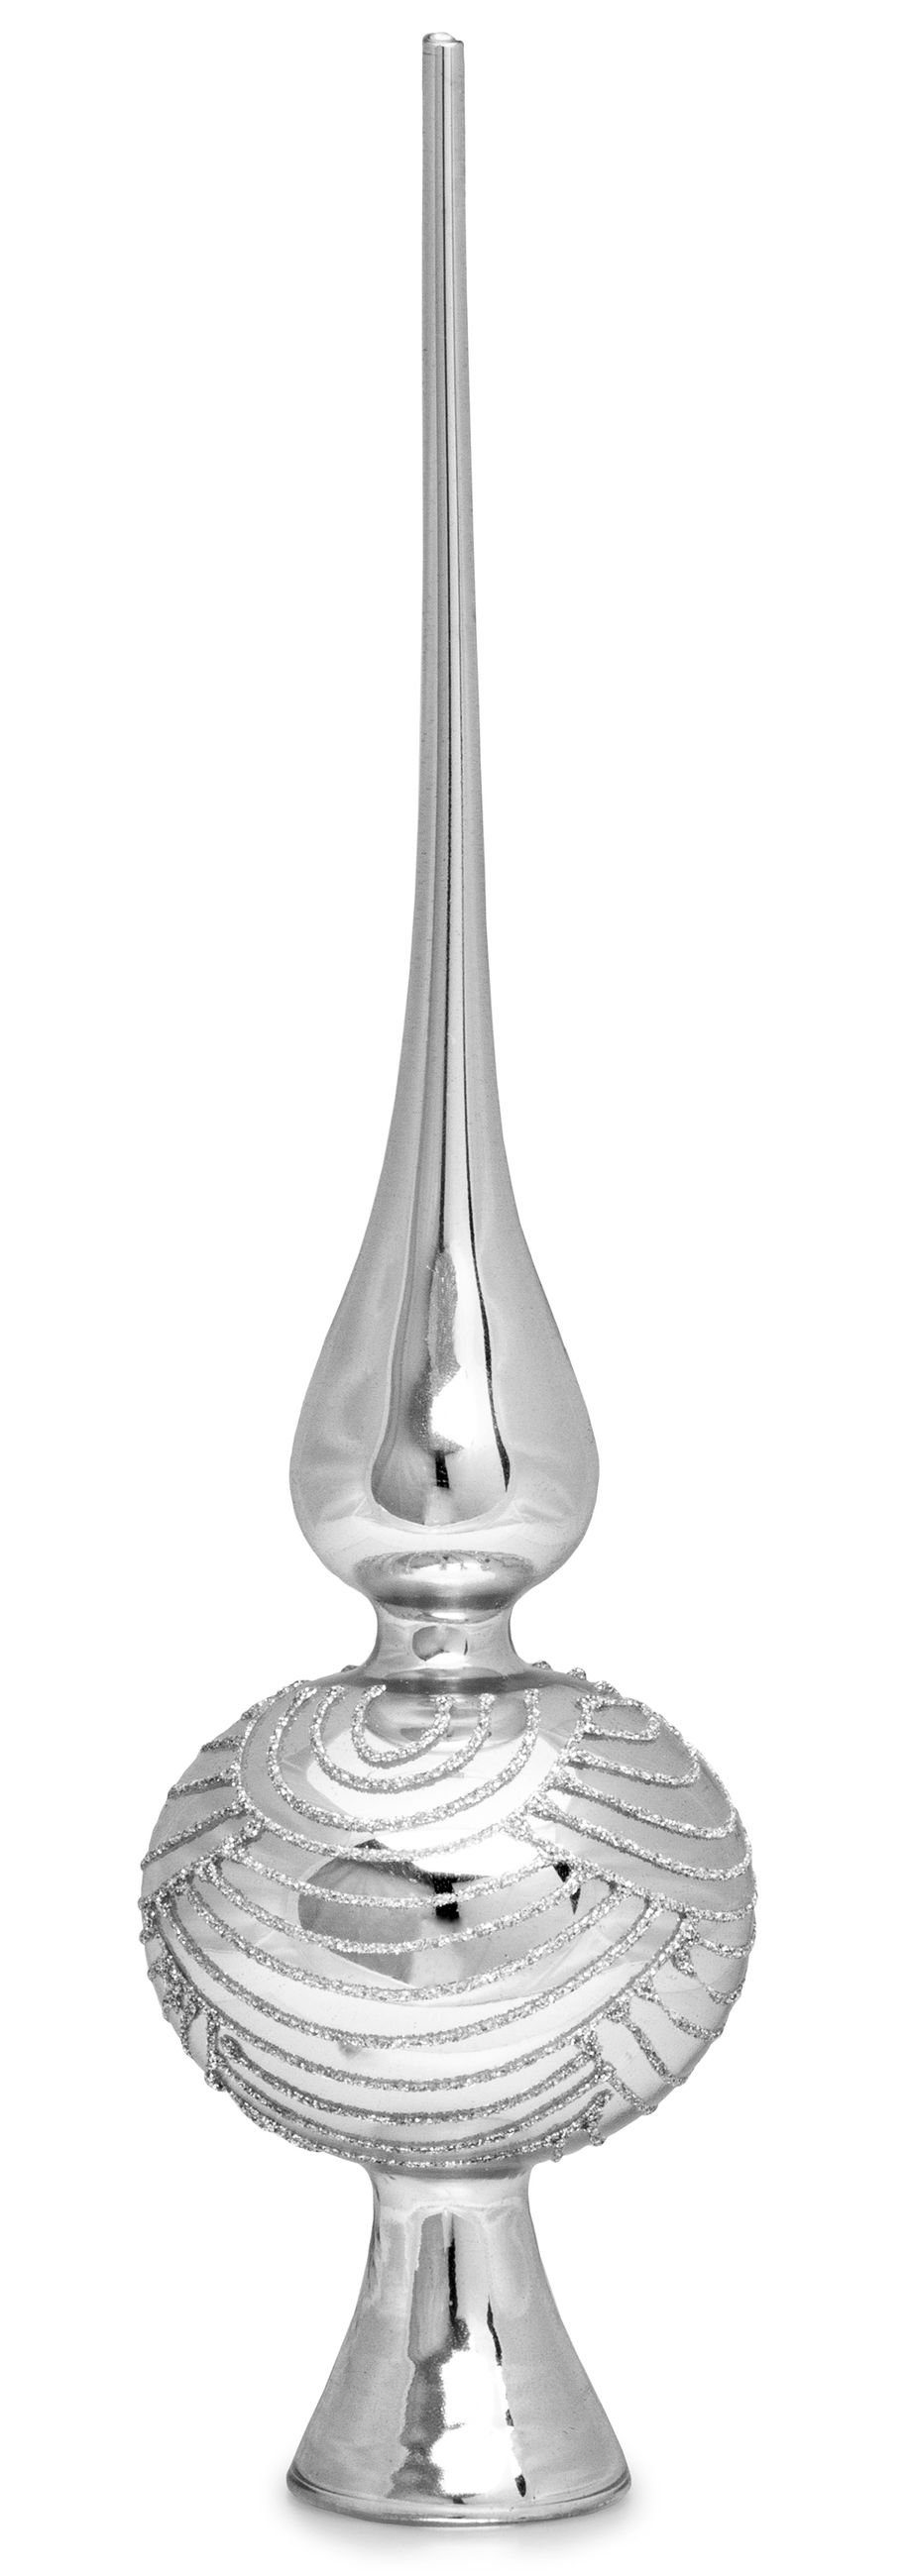 SIKORA Christbaumspitze SP6 Highlights Christbaumspitze aus Glas mit Glitzer Verzierung 2 Größen Silber